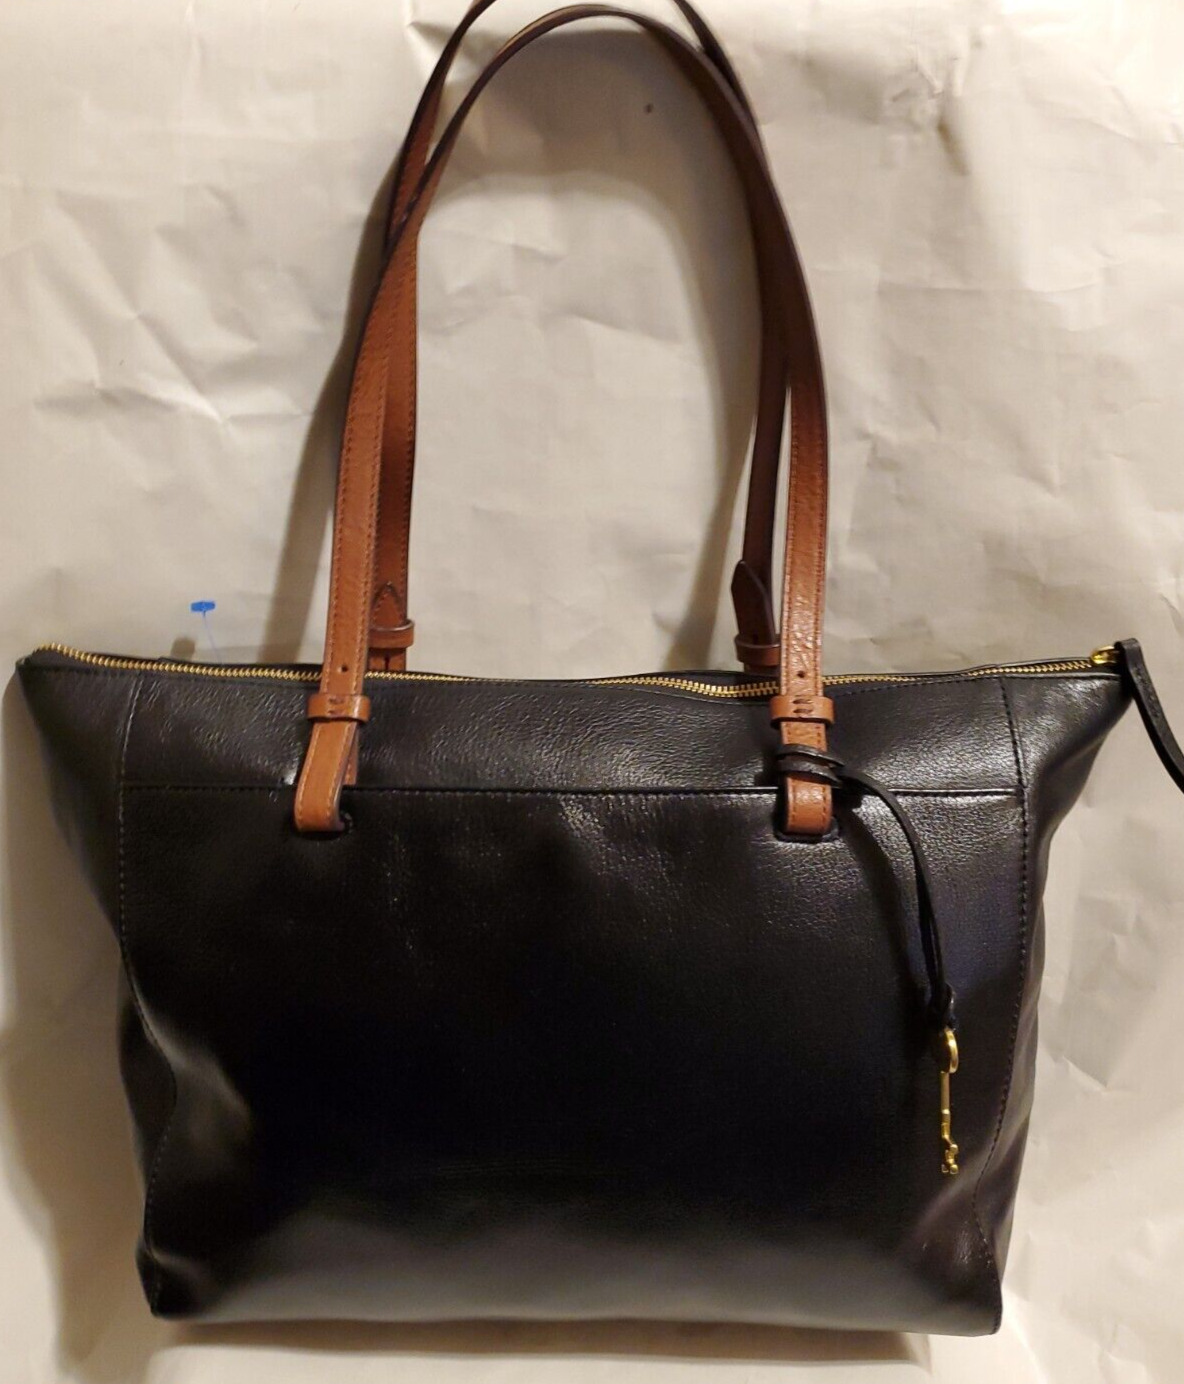 Fossil Rachel Leather Tote Handbag Black/Brown Purse Shoulder Bag MSRP $230